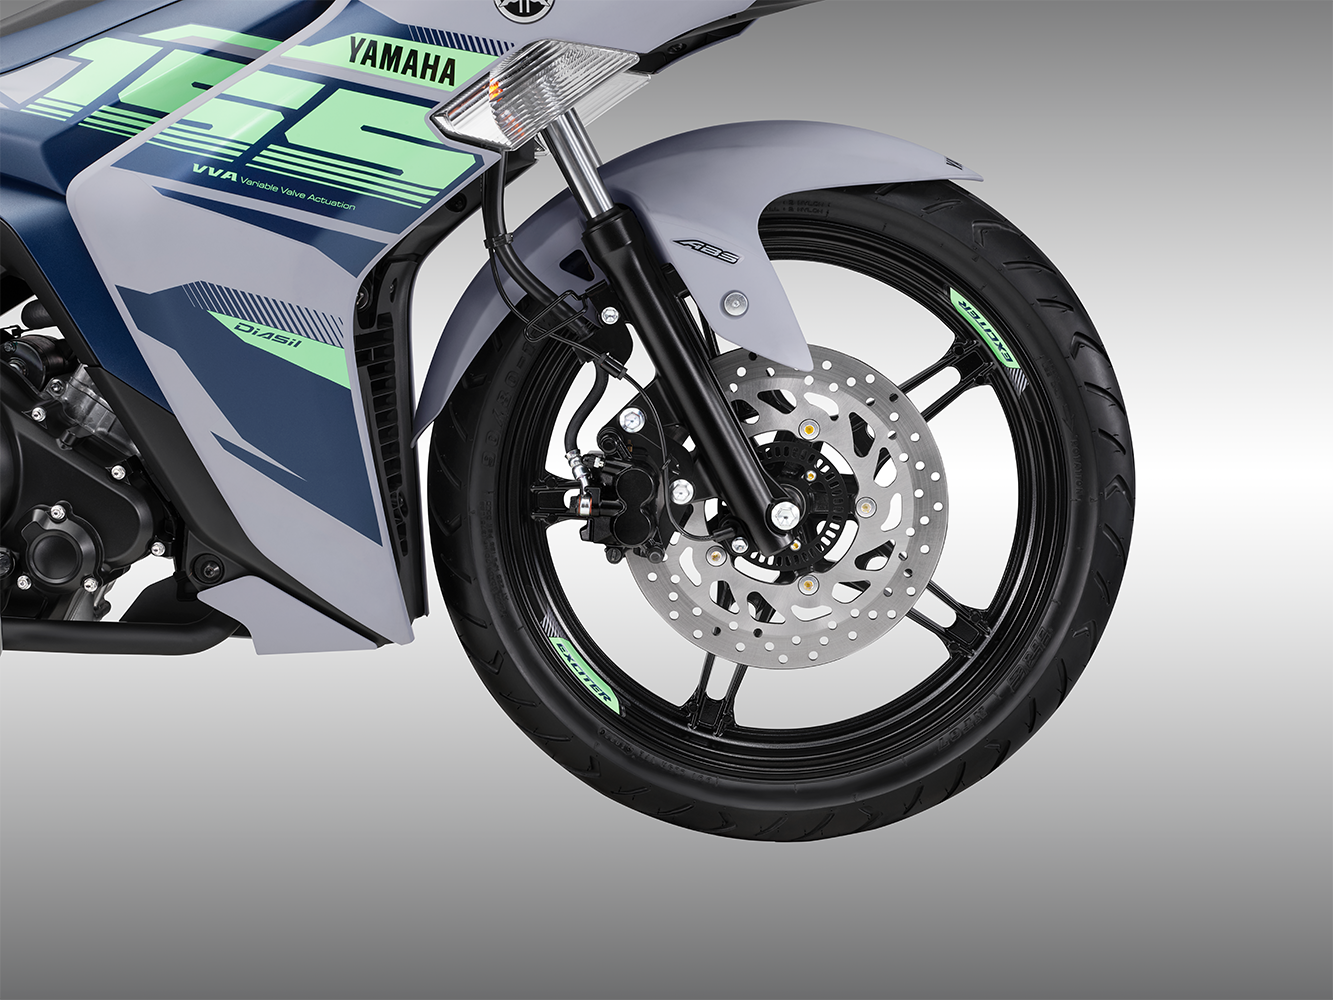 Những yếu tố khiến Yamaha Exciter 155 VVA - ABS thu hút Gen Z: Từ thiết kế, hiệu suất động cơ tới công nghệ an toàn - Ảnh 5.